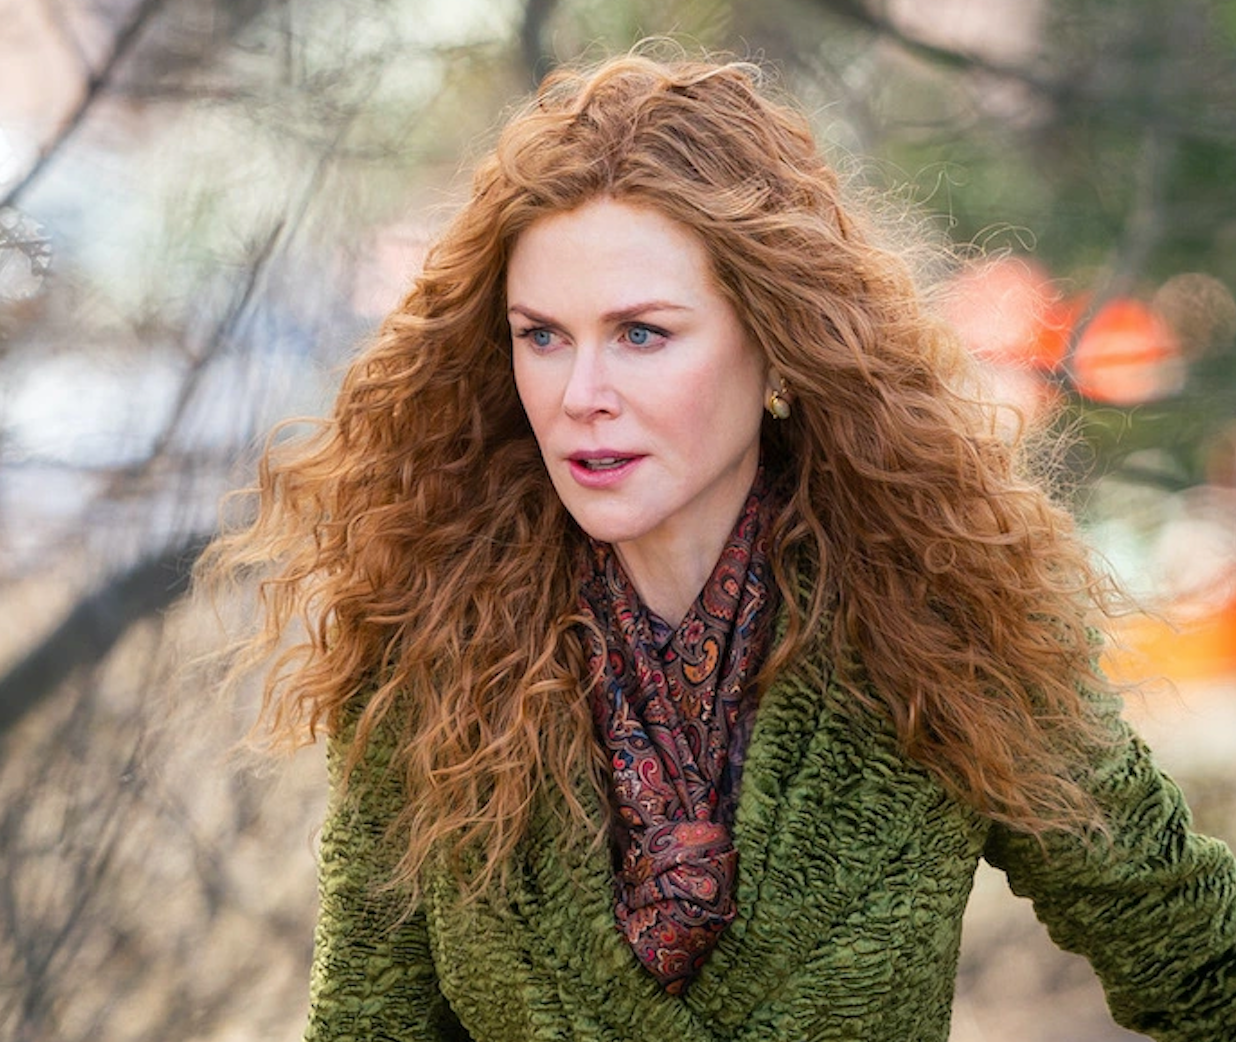 Nicole Kidman in "The Undoing" 2020